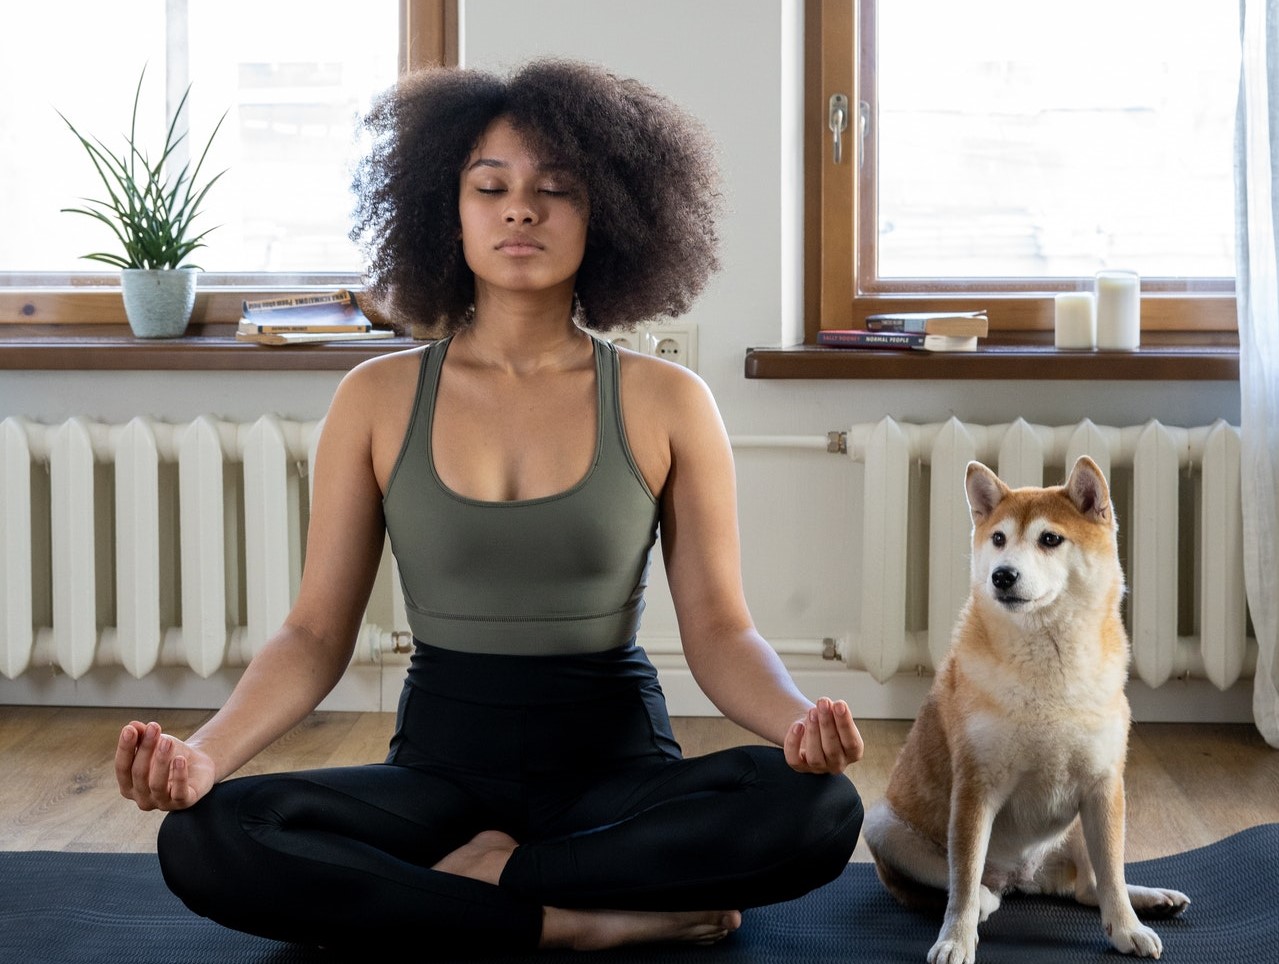 Vrouw mediteert op matje met hond naast zich